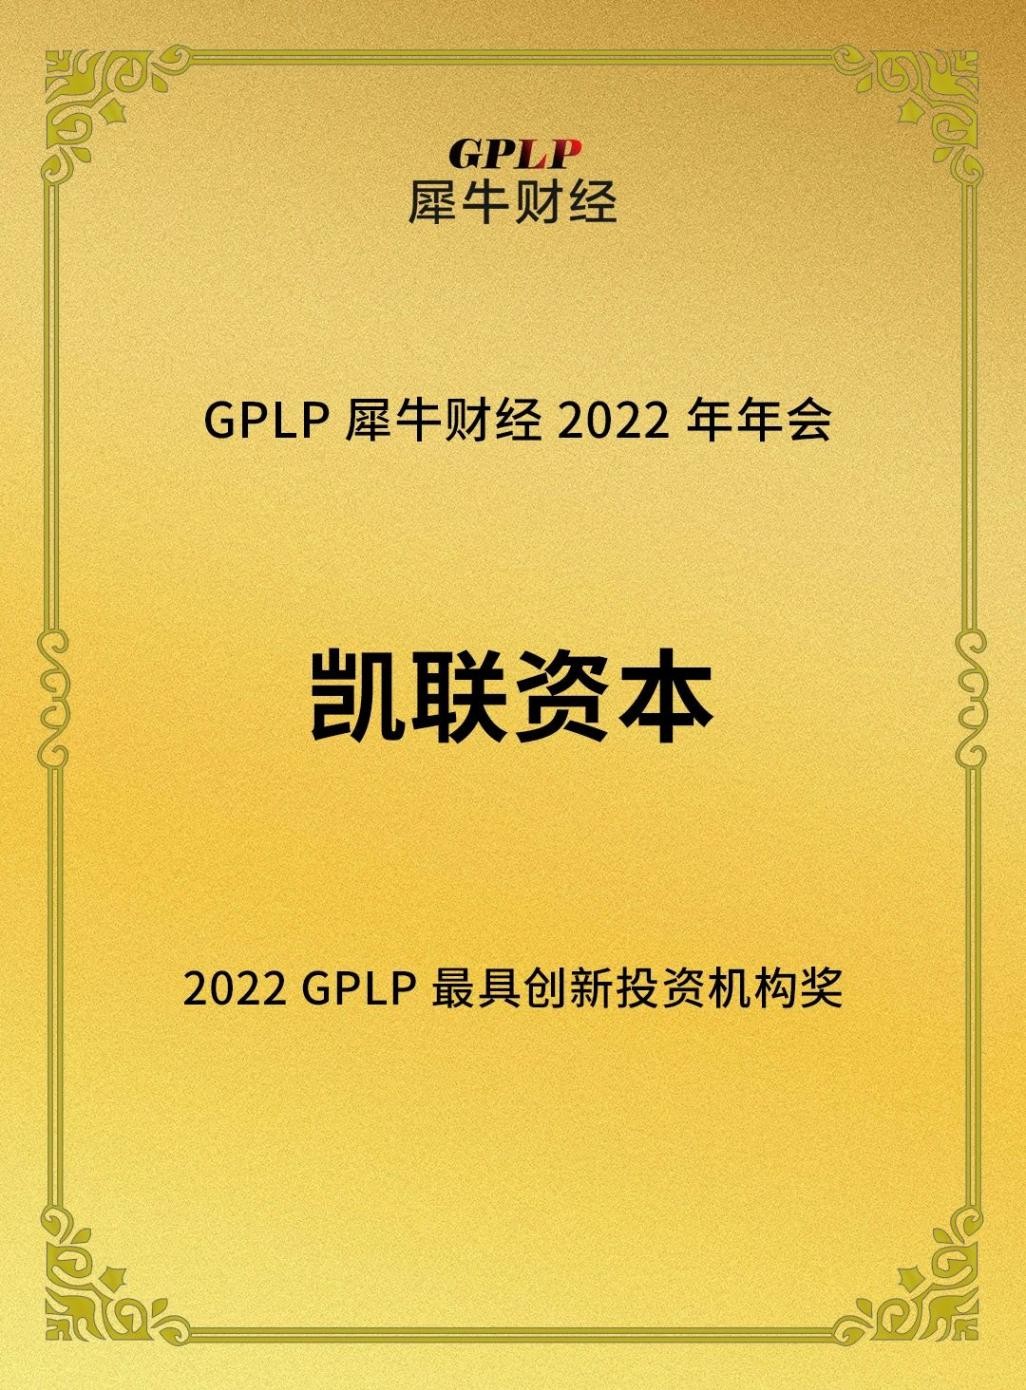 凯联(北京)投资基金管理有限公司荣获“2022年GPLP最具创新投资机构奖”，创新性投资布局广受市场关注